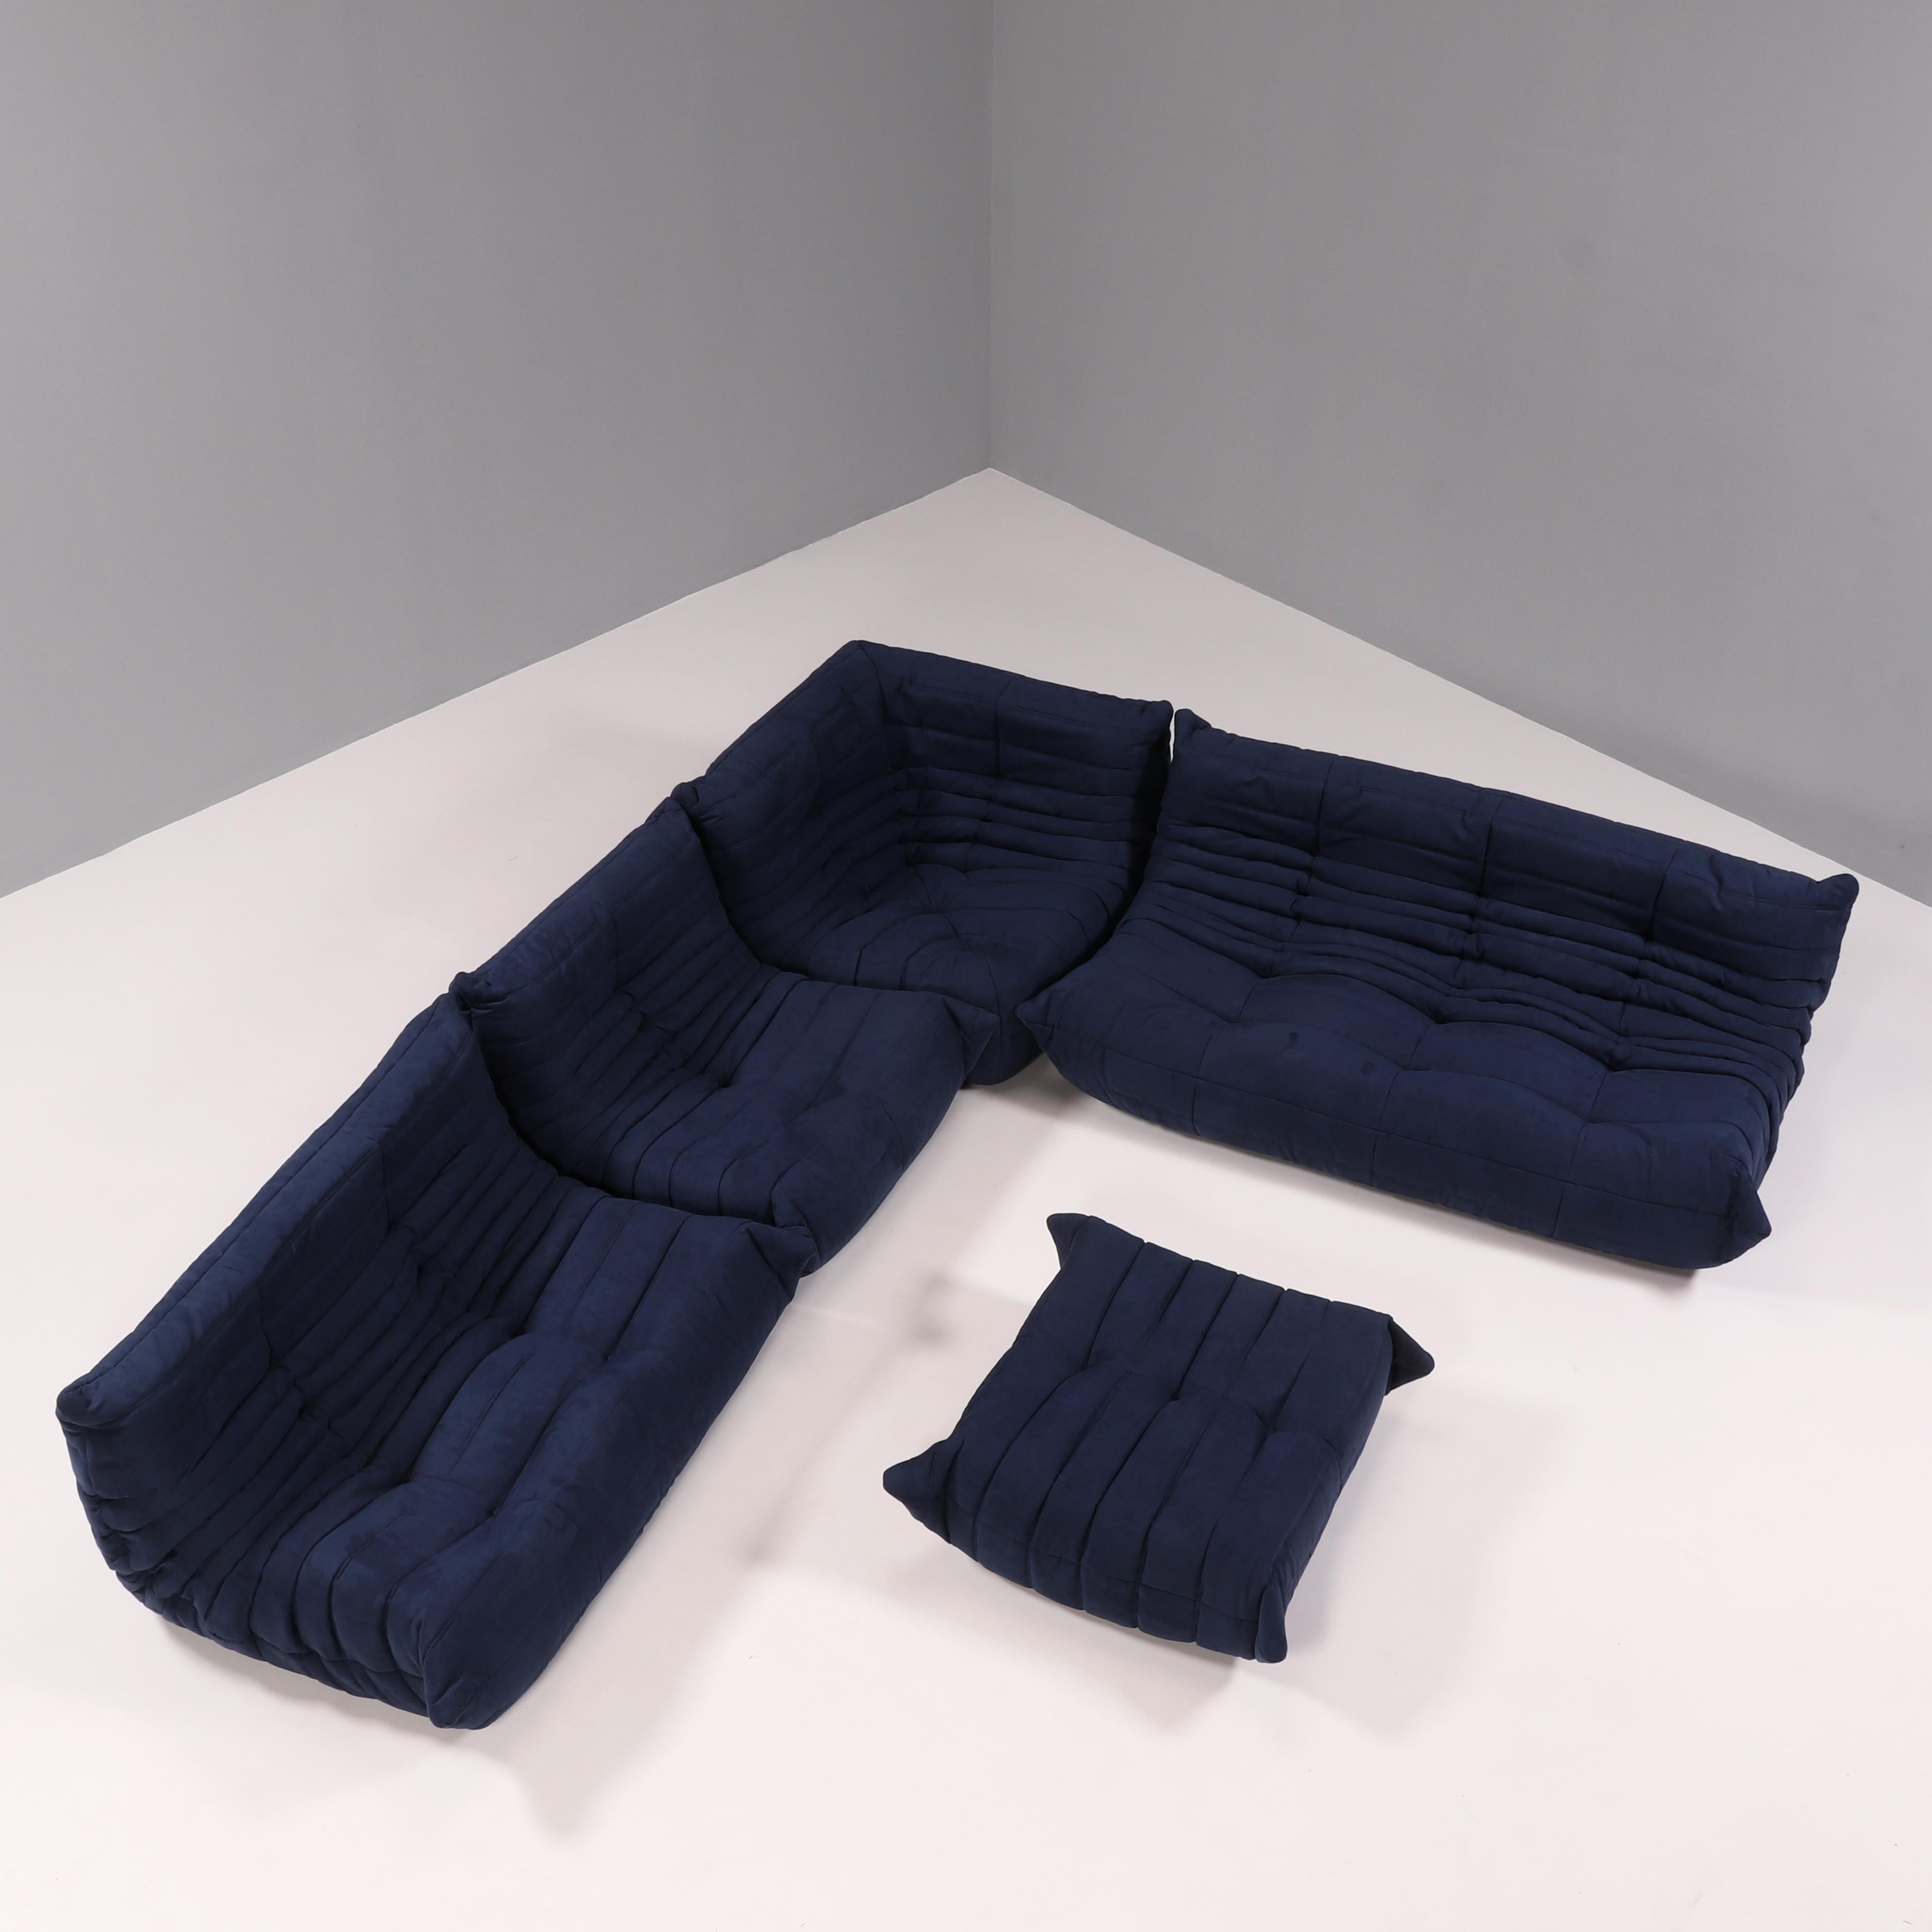 Le canapé bleu Togo, conçu à l'origine par Michel Ducaroy pour Ligne Roset en 1973, est devenu un classique du design du milieu du siècle.

Les canapés ont été récemment retapissés dans un tissu bleu foncé très doux. Fabriquée entièrement en mousse,